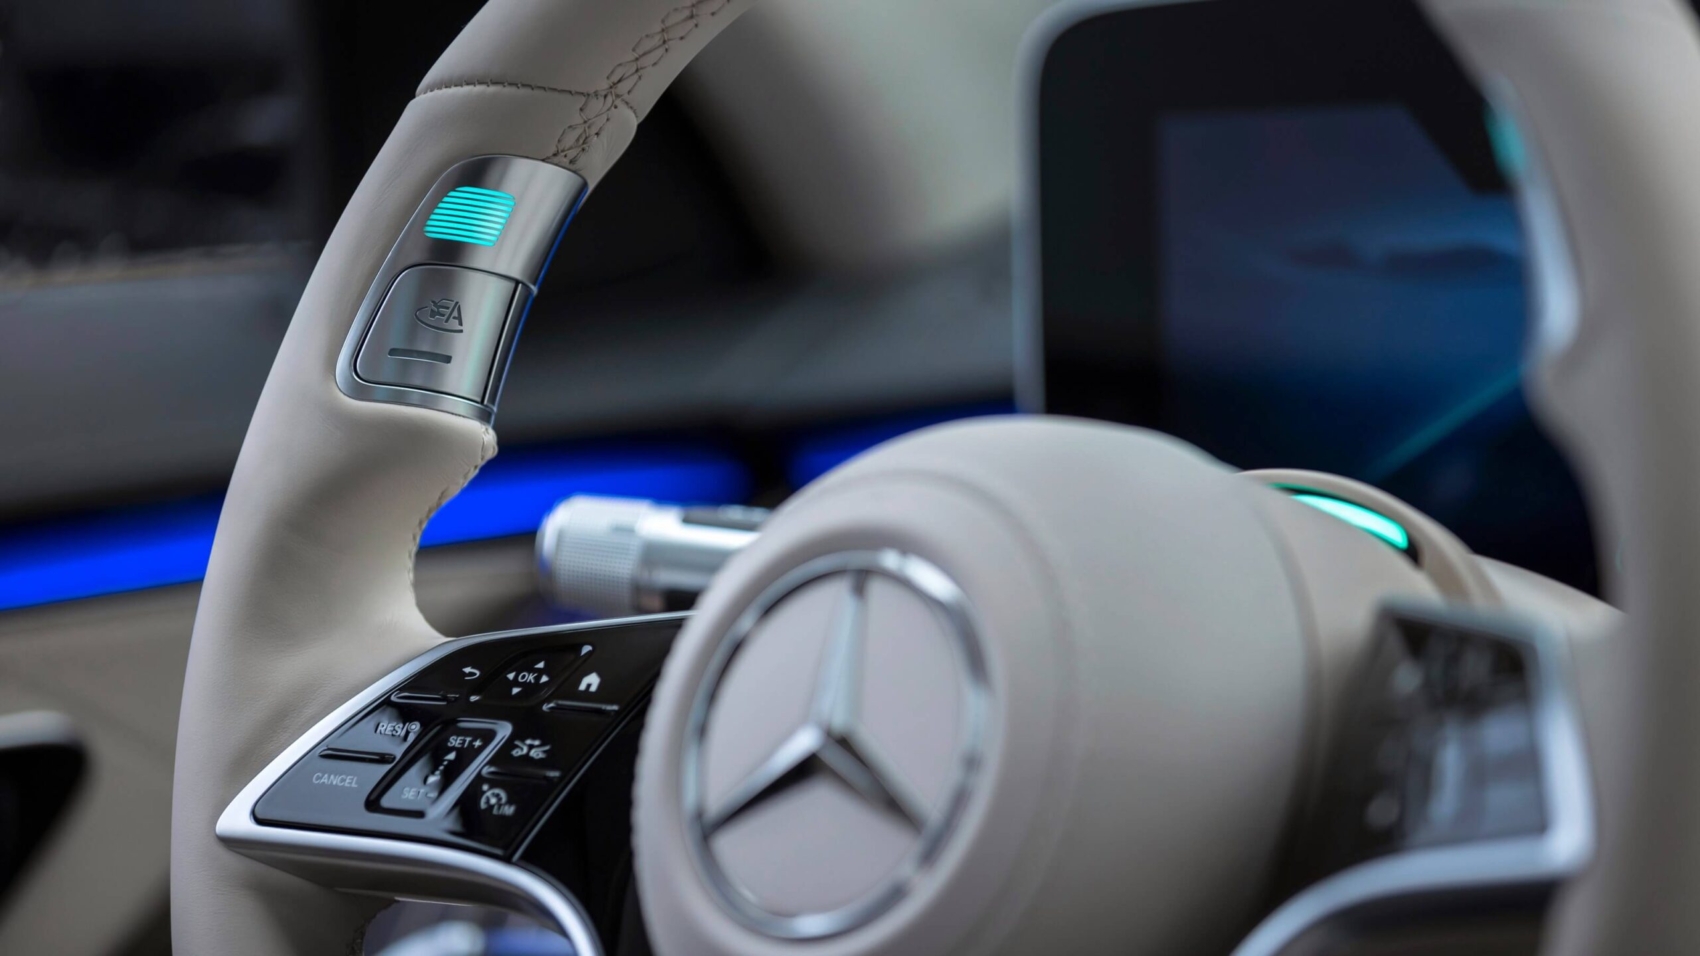 Mercedes level 3 autonomous driving system